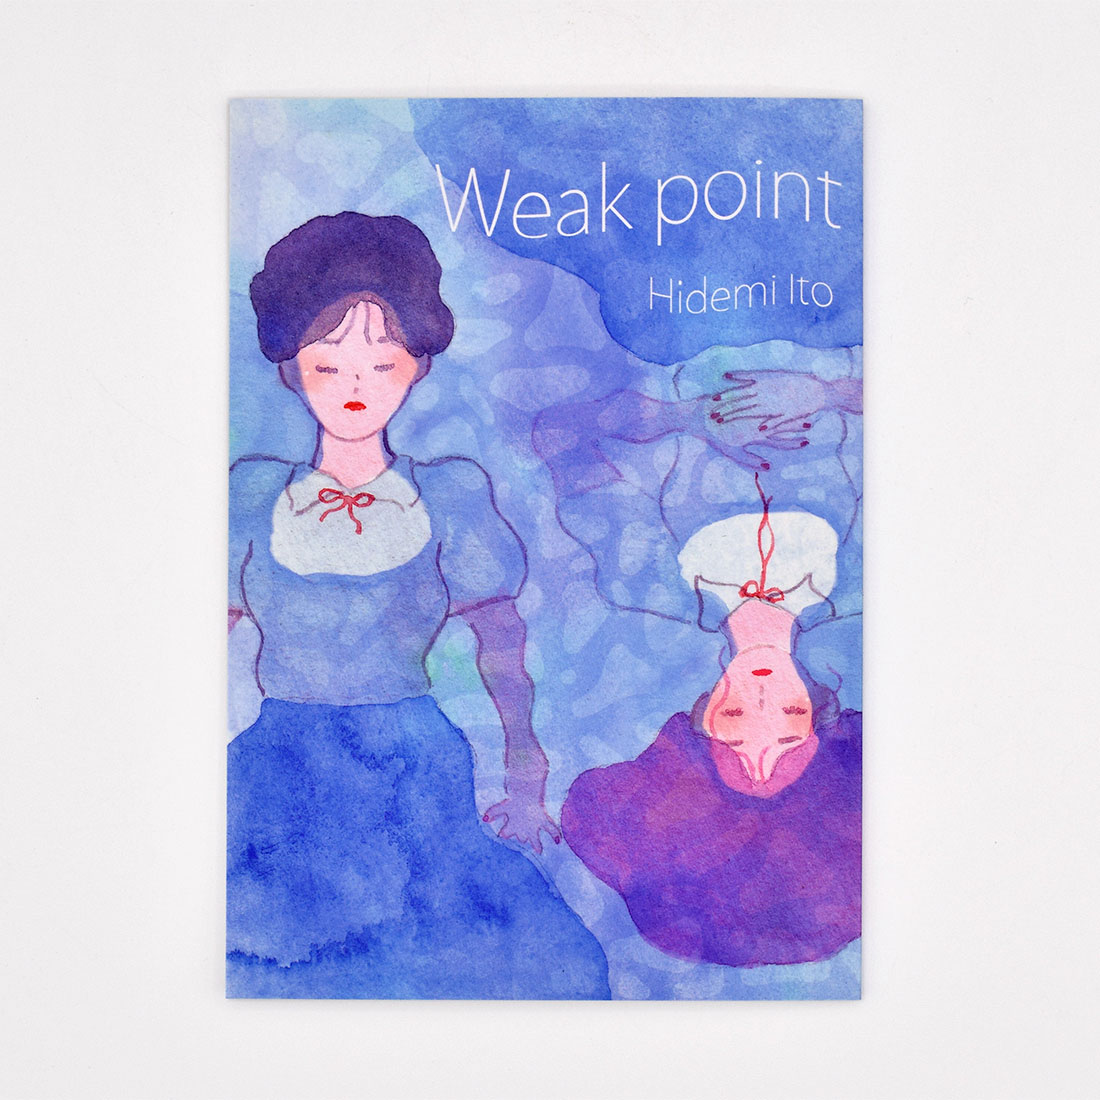 短編漫画集「Weak point」